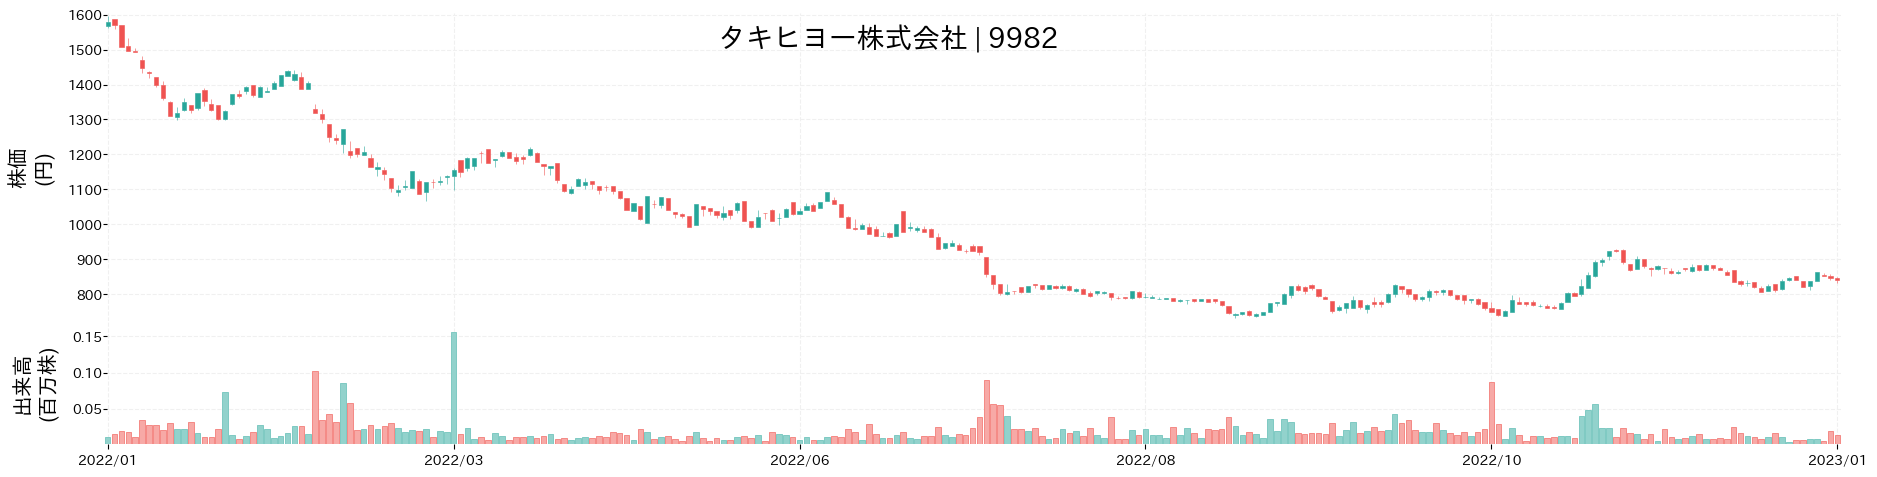 タキヒヨーの株価推移(2022)